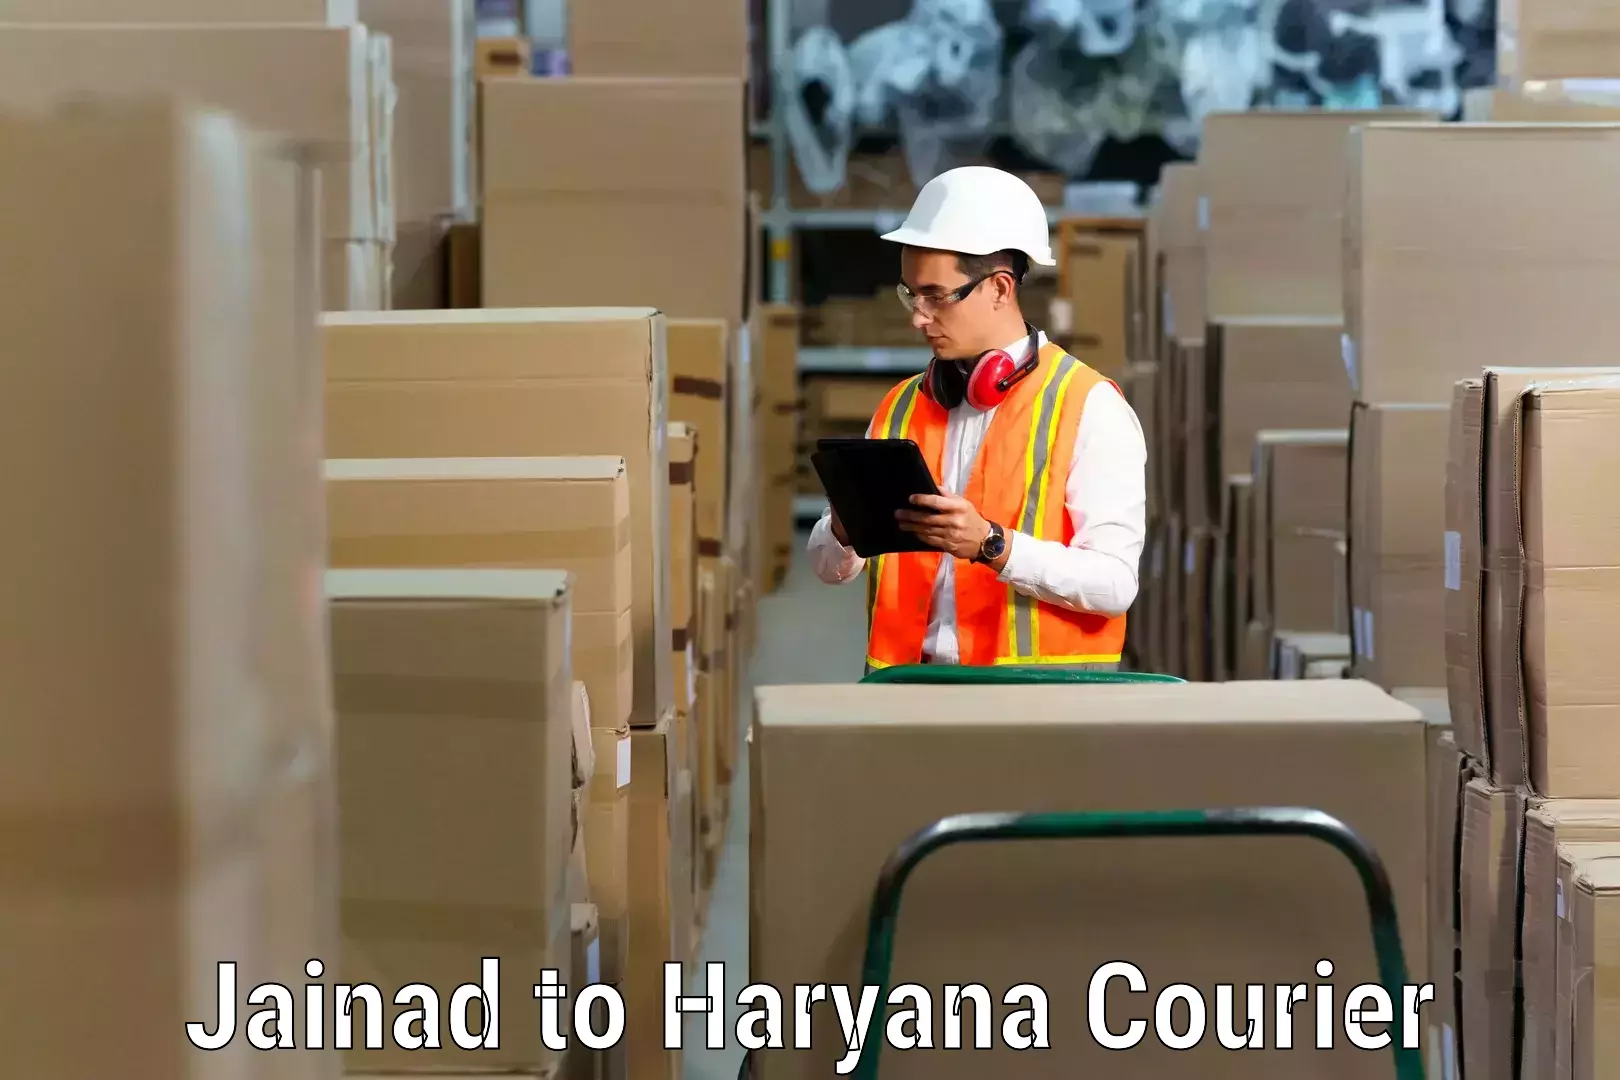 Efficient moving company Jainad to Narwana